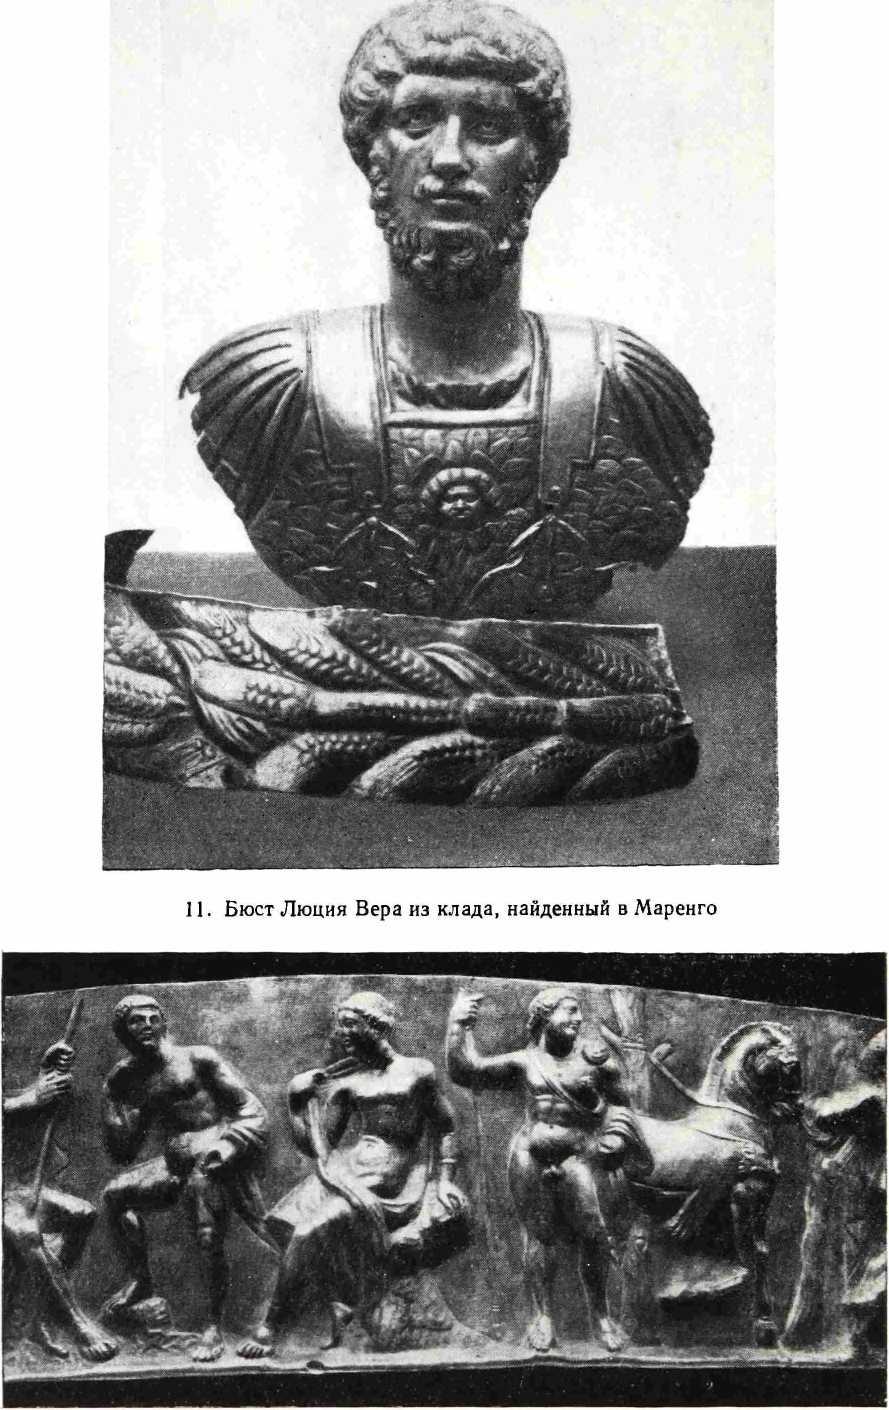 12. Часть фриза с изображением римских божеств из клада, найденного в Маренго